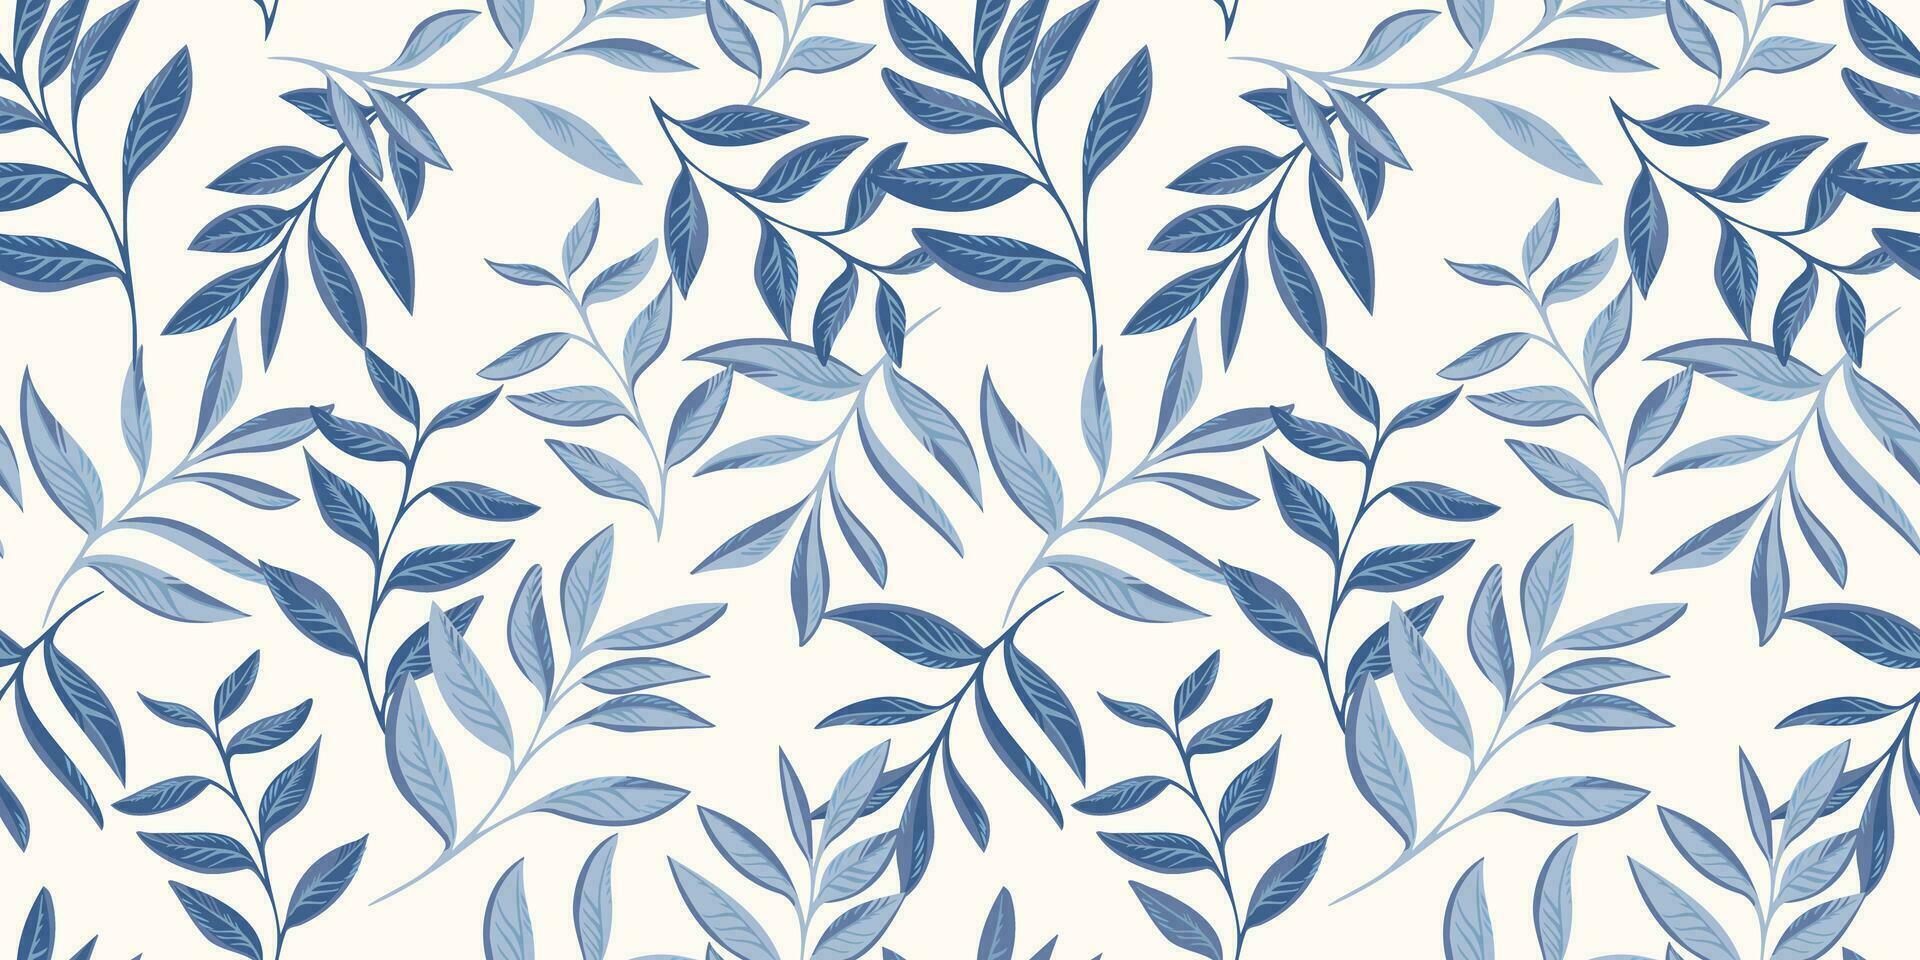 Vektor Hand gezeichnet Blau Blätter Stengel verflochten im ein nahtlos Muster. abstrakt, kreativ, tropisch gestalten Blatt Geäst drucken. Vorlage zum Design, Textil, Mode, Oberfläche Design, Stoff, Hintergrund